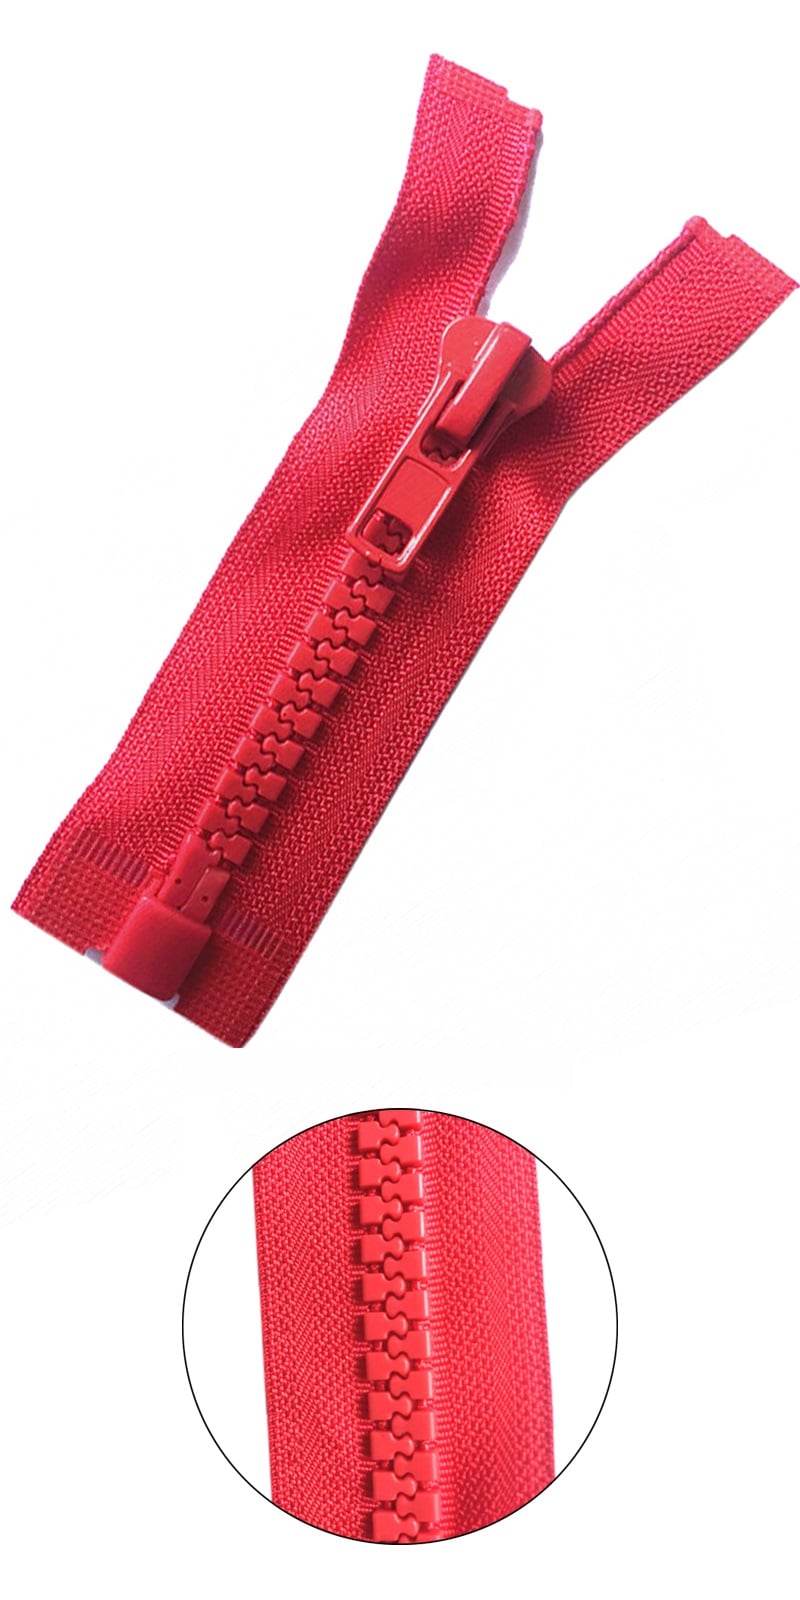 No.10 plastic zipper